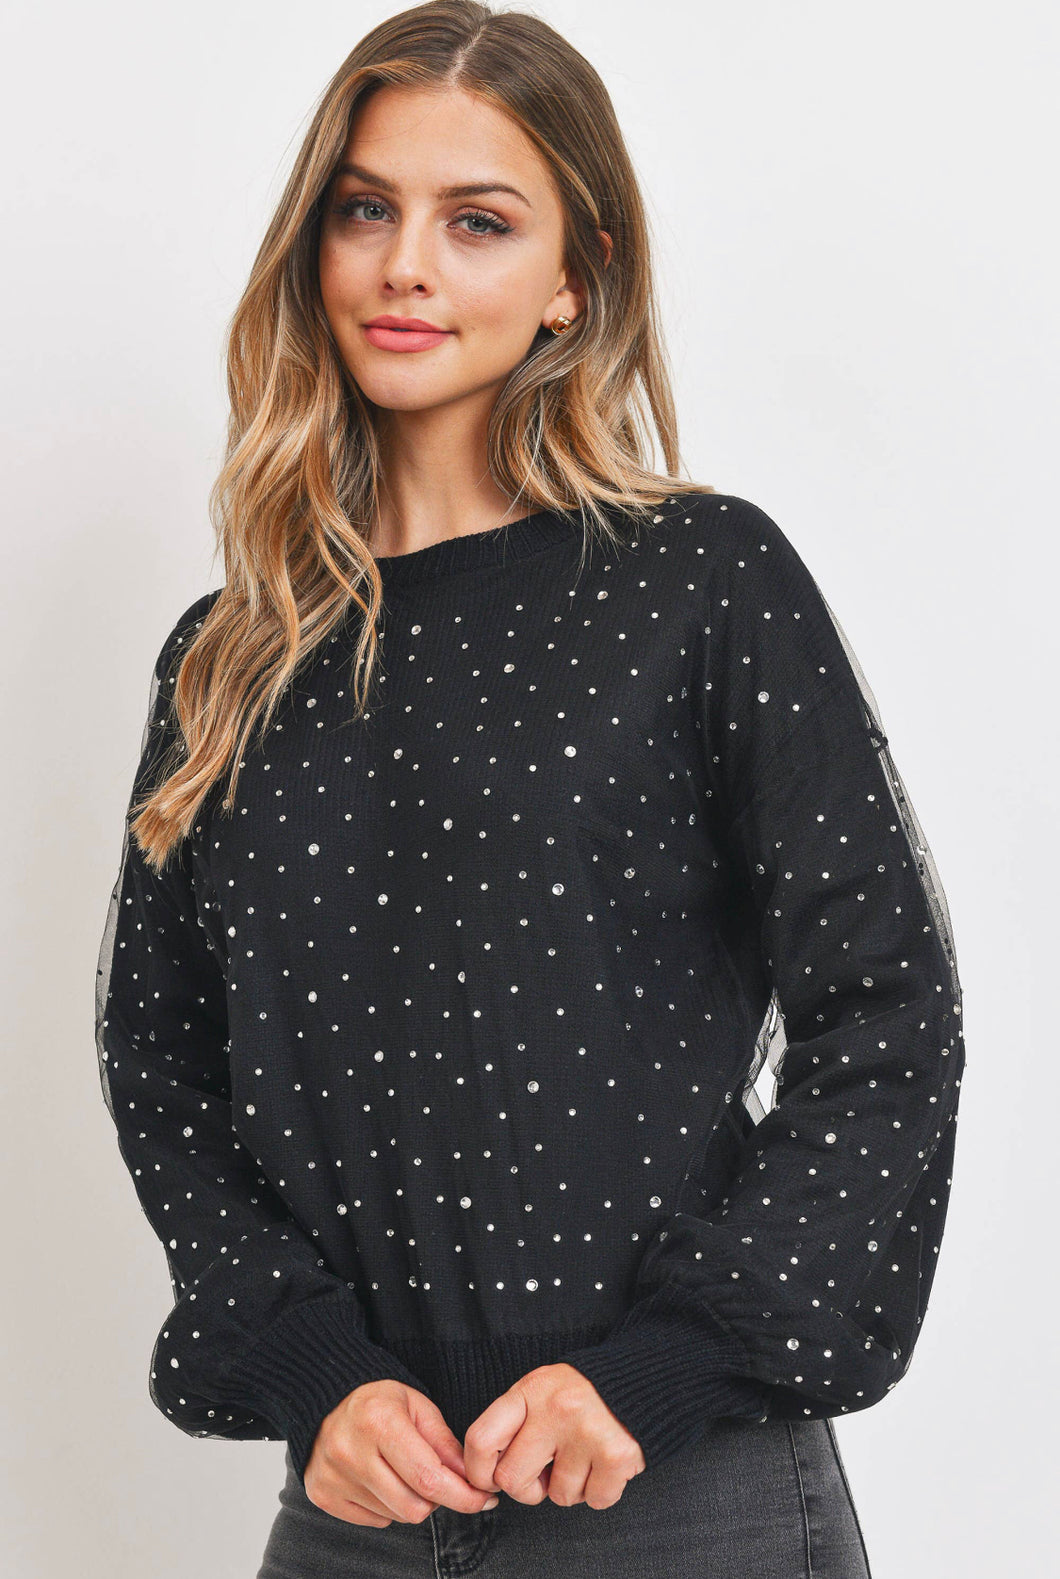 Rhinestone Sheer Overlay Sweater-Black